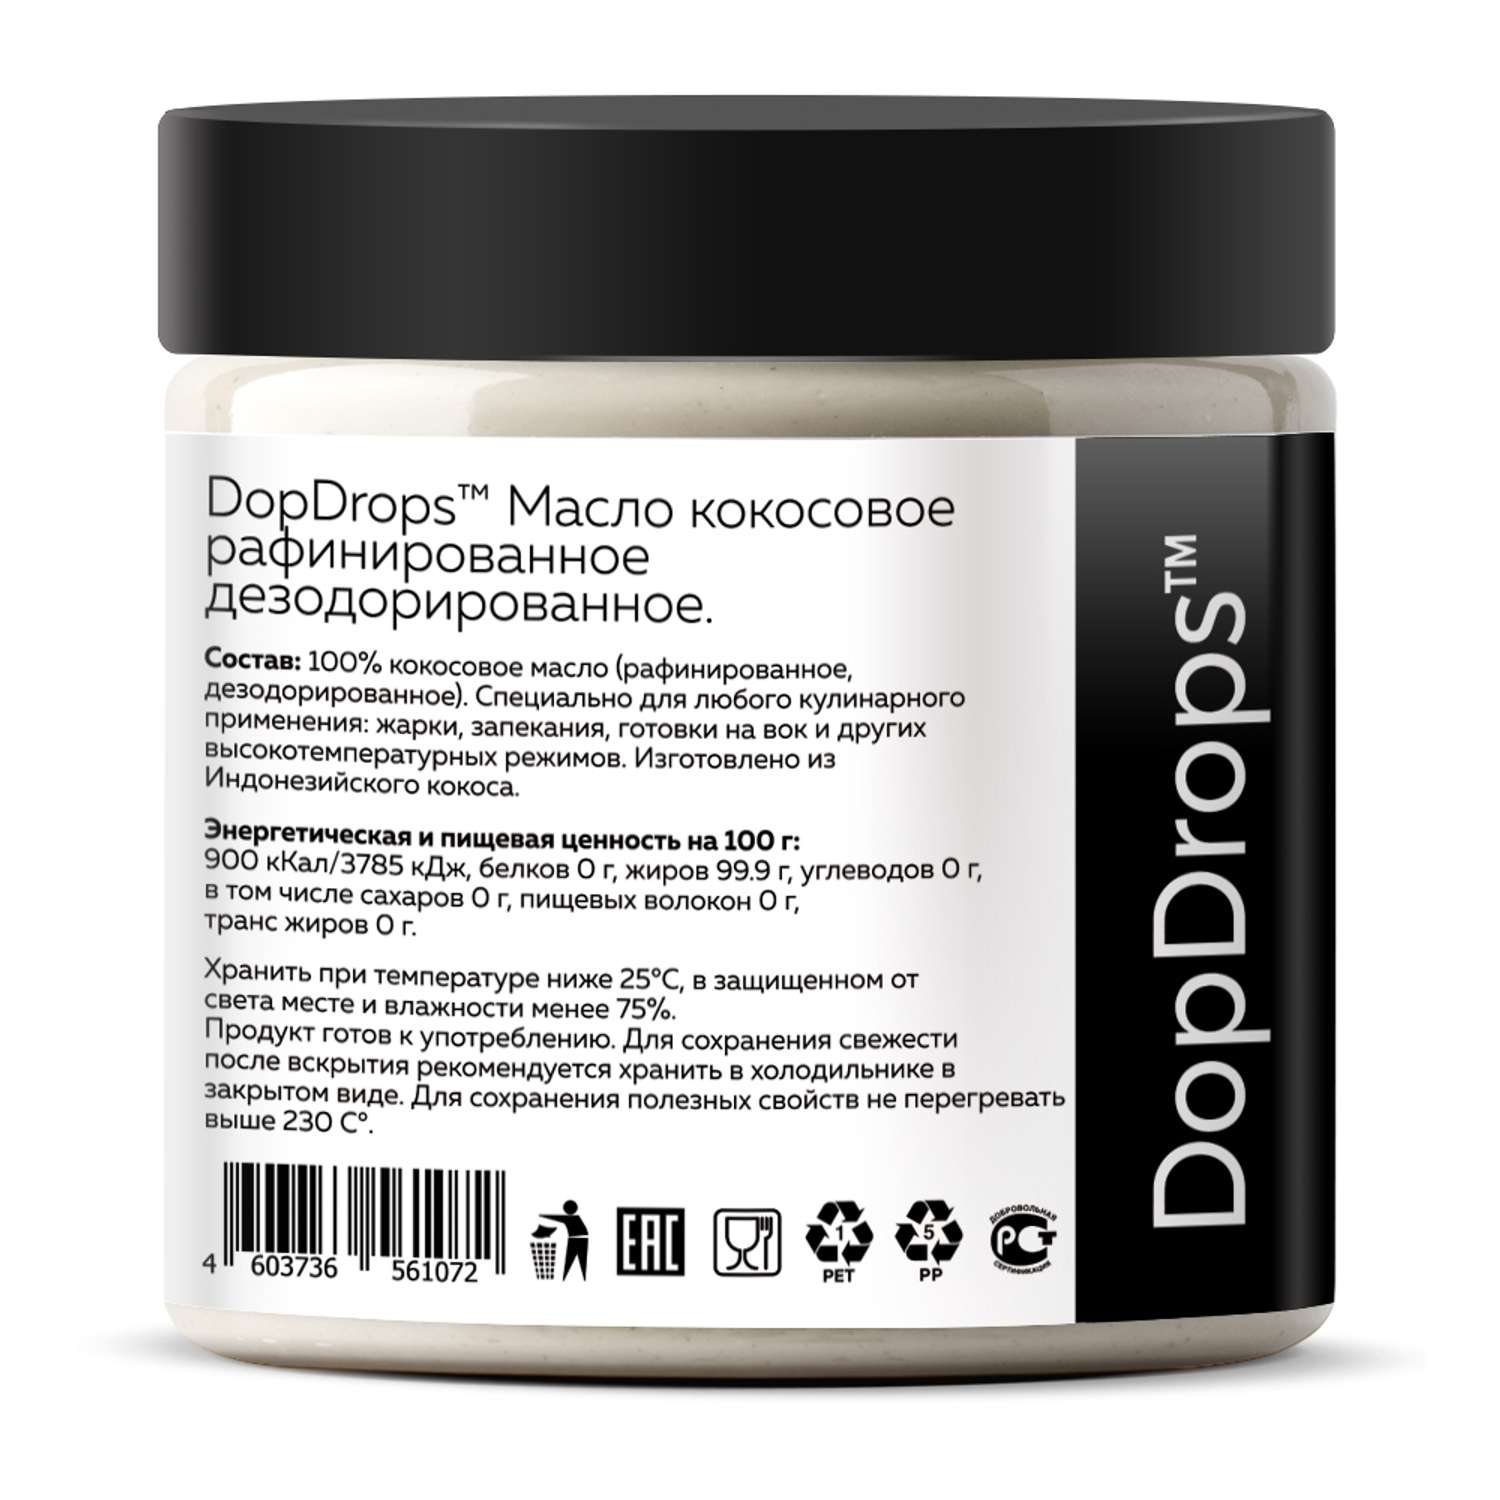 Кокосовое масло DopDrops натуральное рафинированное высшей степени очистки 500 мл - фото 2